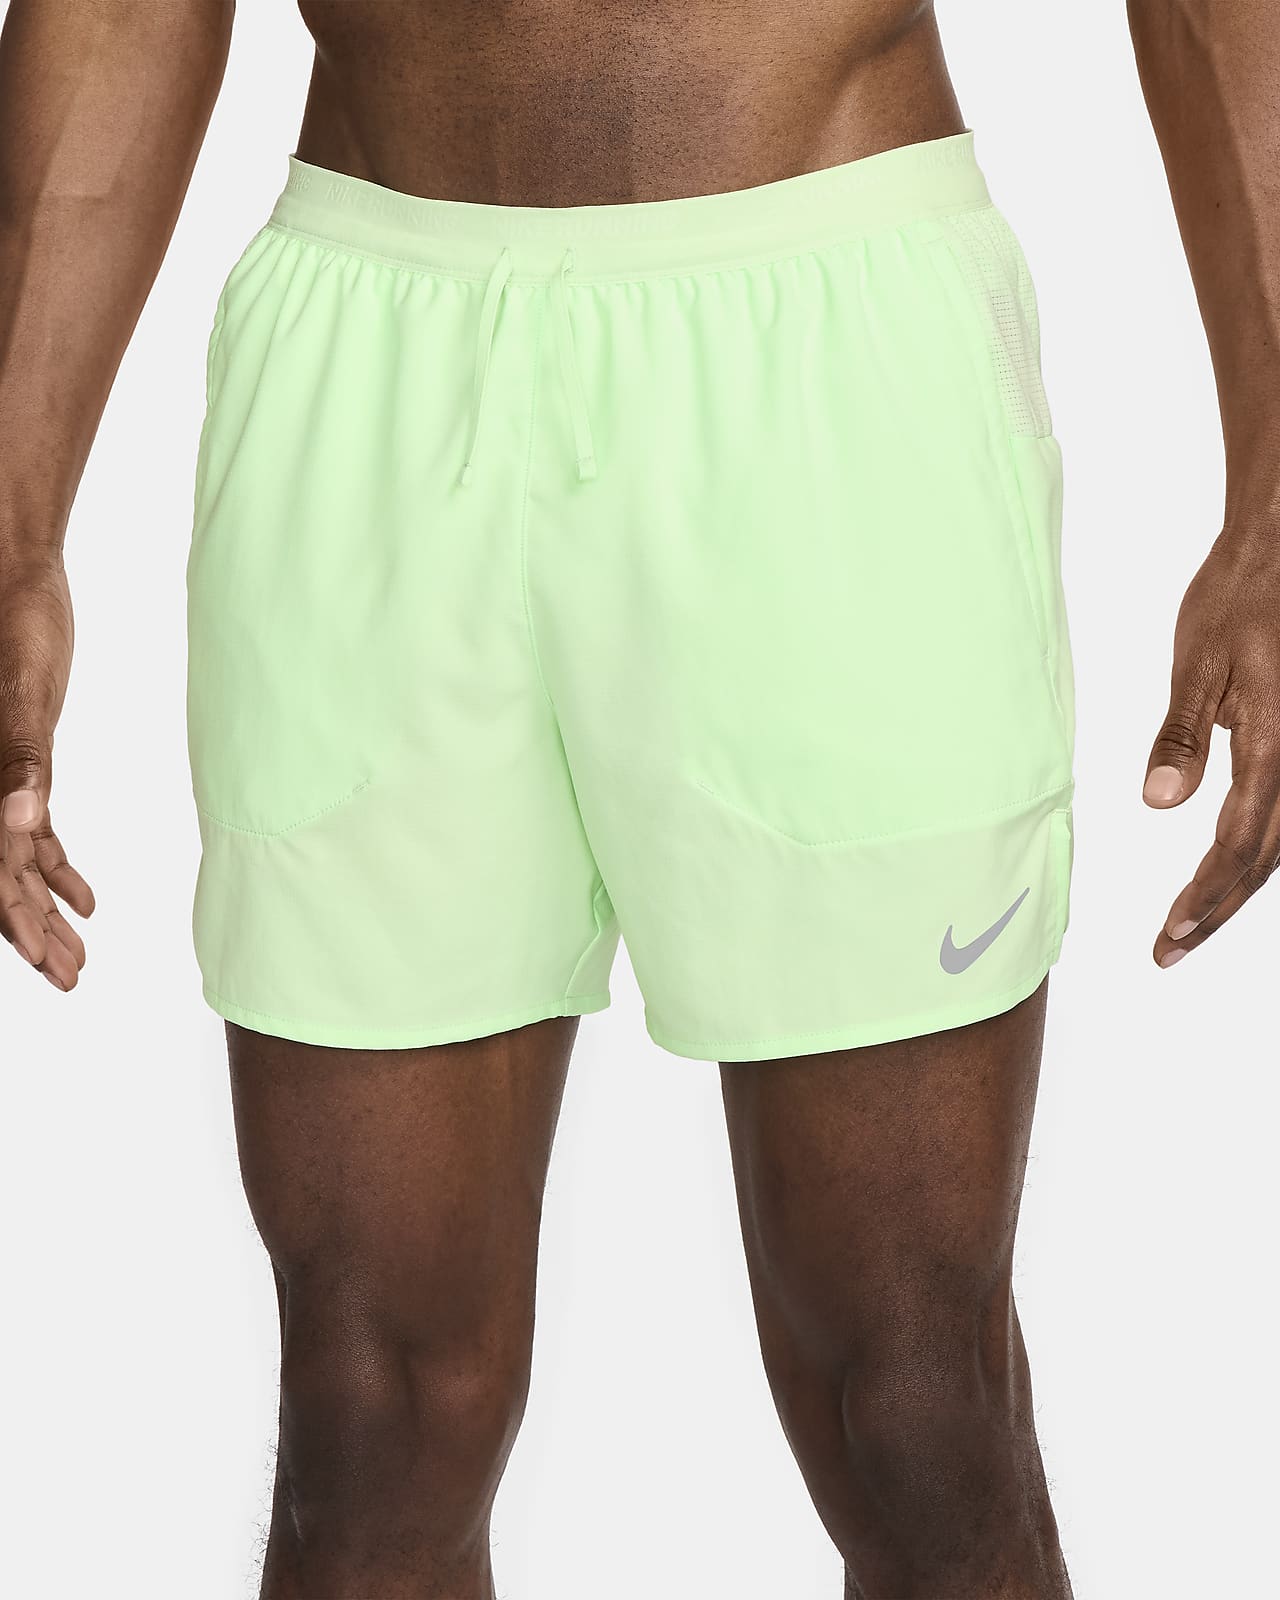 Nike 9 Distance Running Shorts Built In Underwear Black 642813-013 Men’s  Size XL